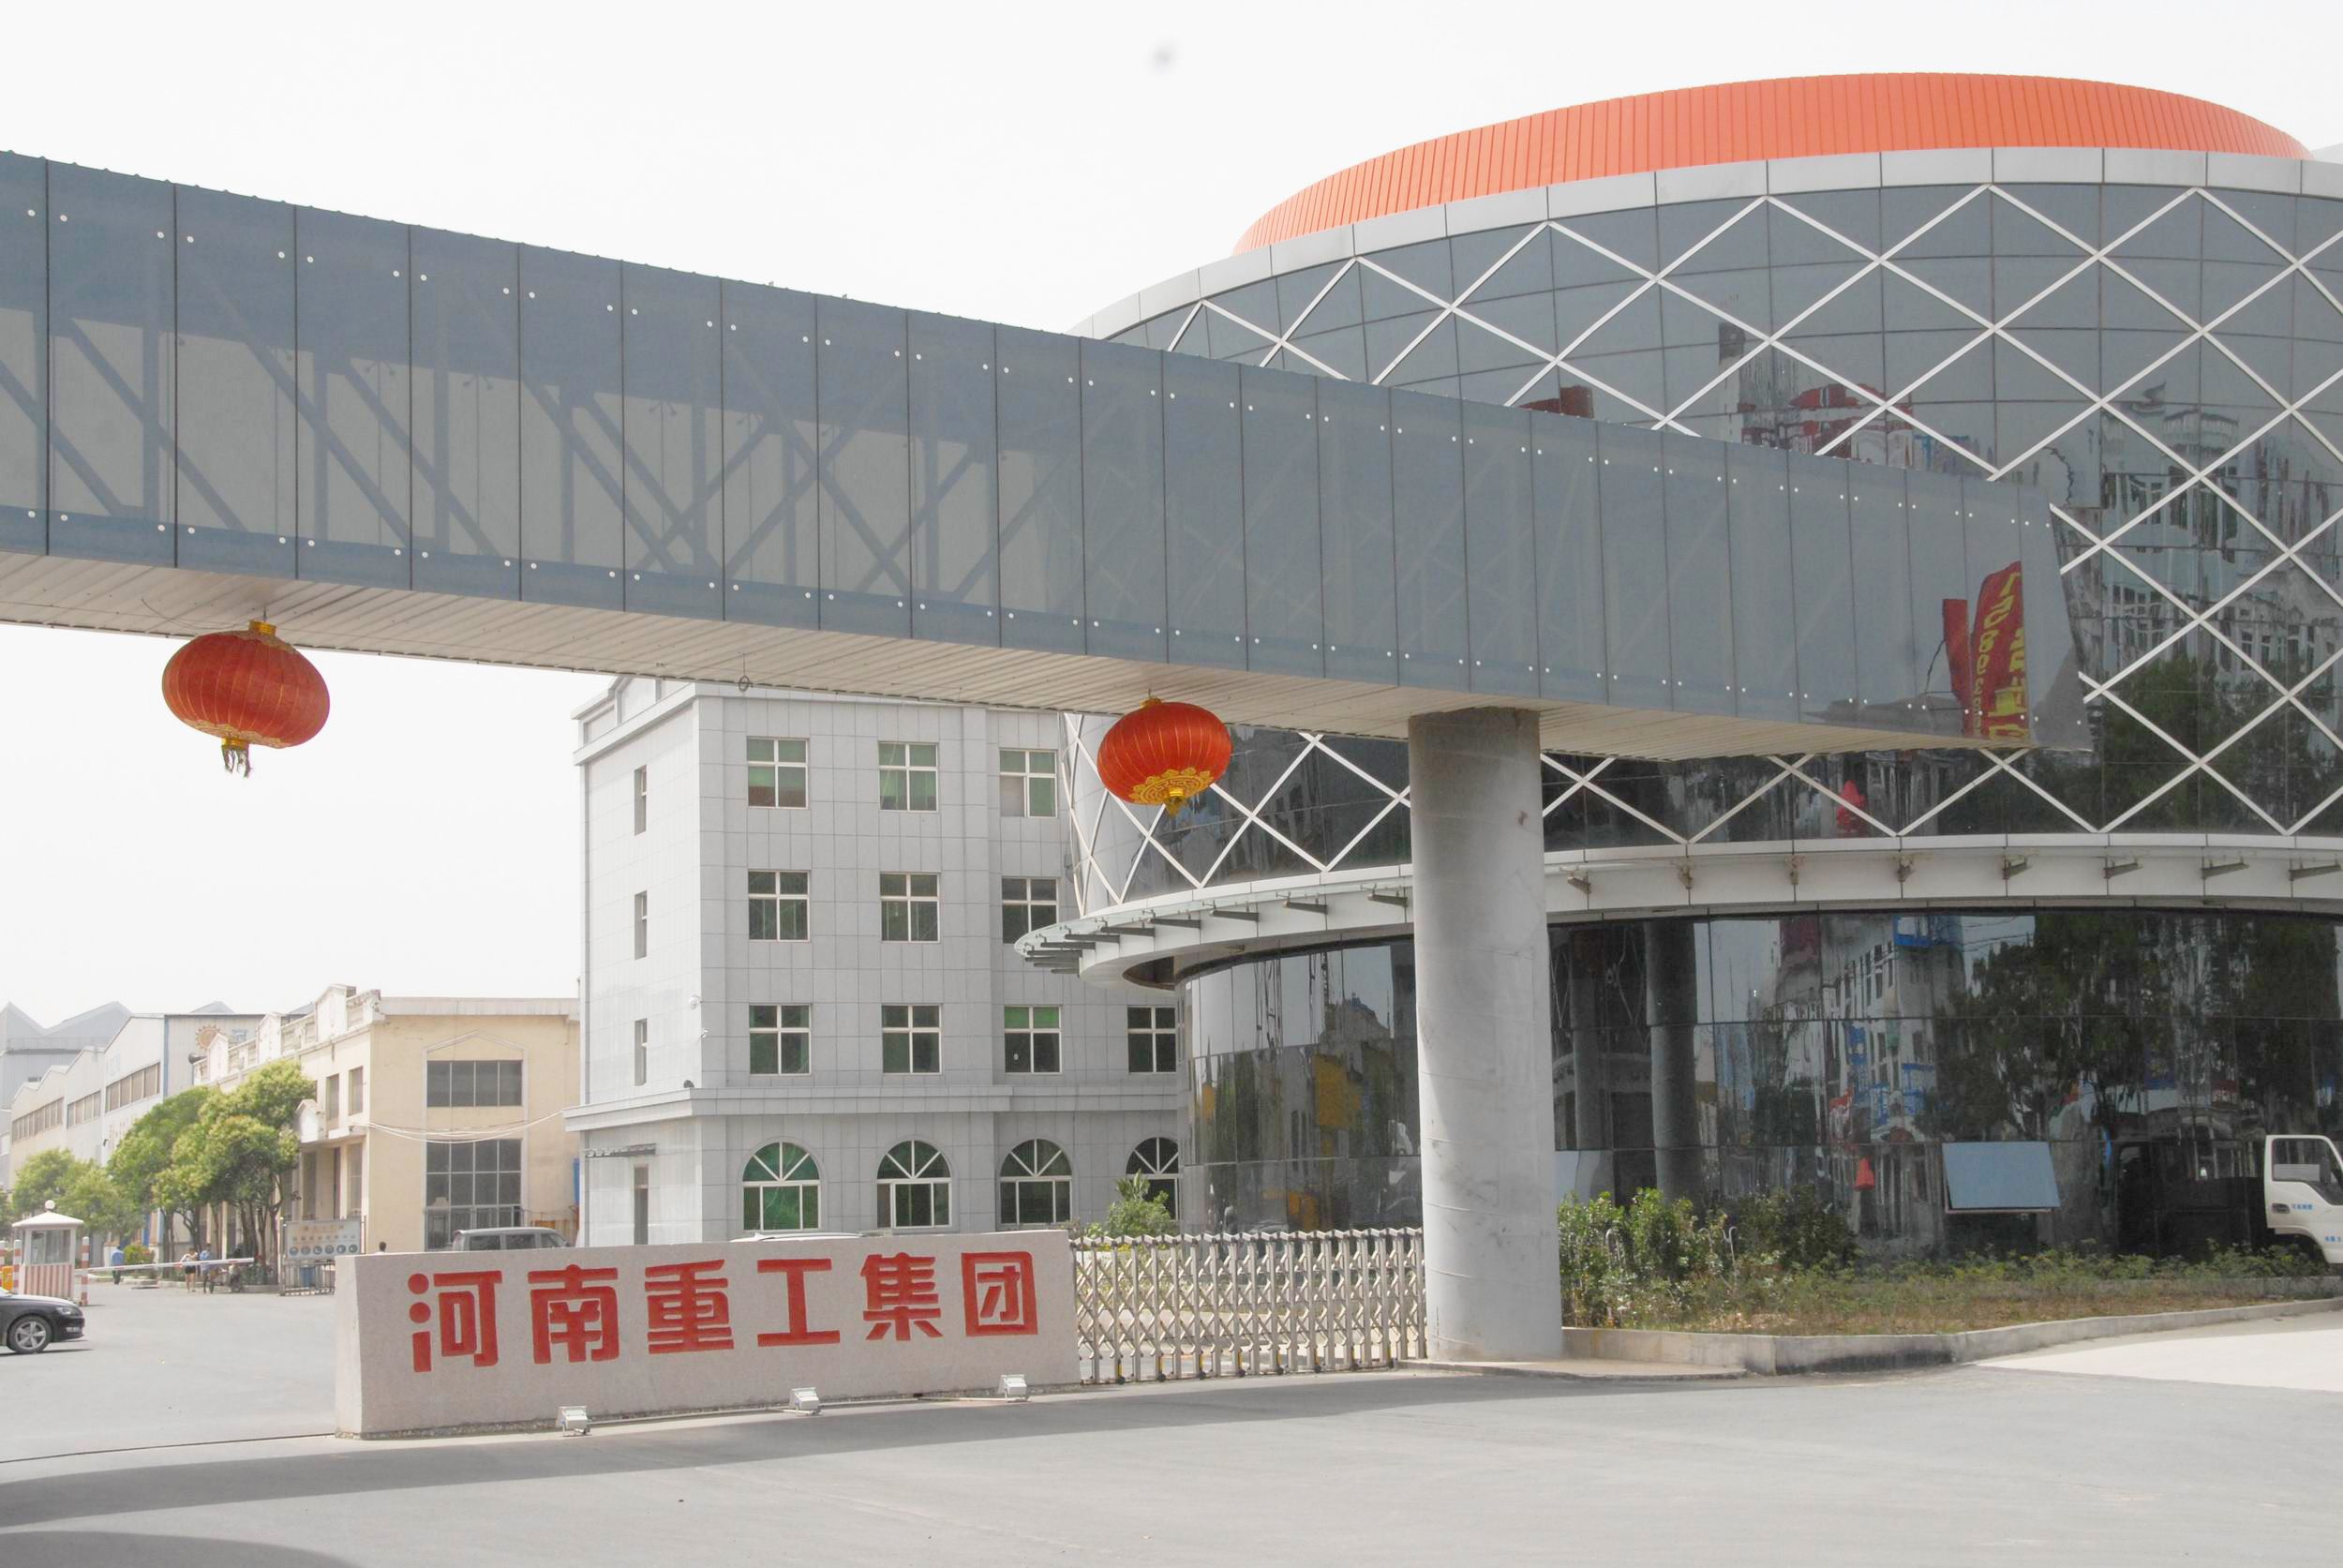 2000年3月在震耳欲聋的鞭炮声和隆隆的机器轰鸣声中公司新区正式开工建设,并正式更名为河南豫中起重机有限公司